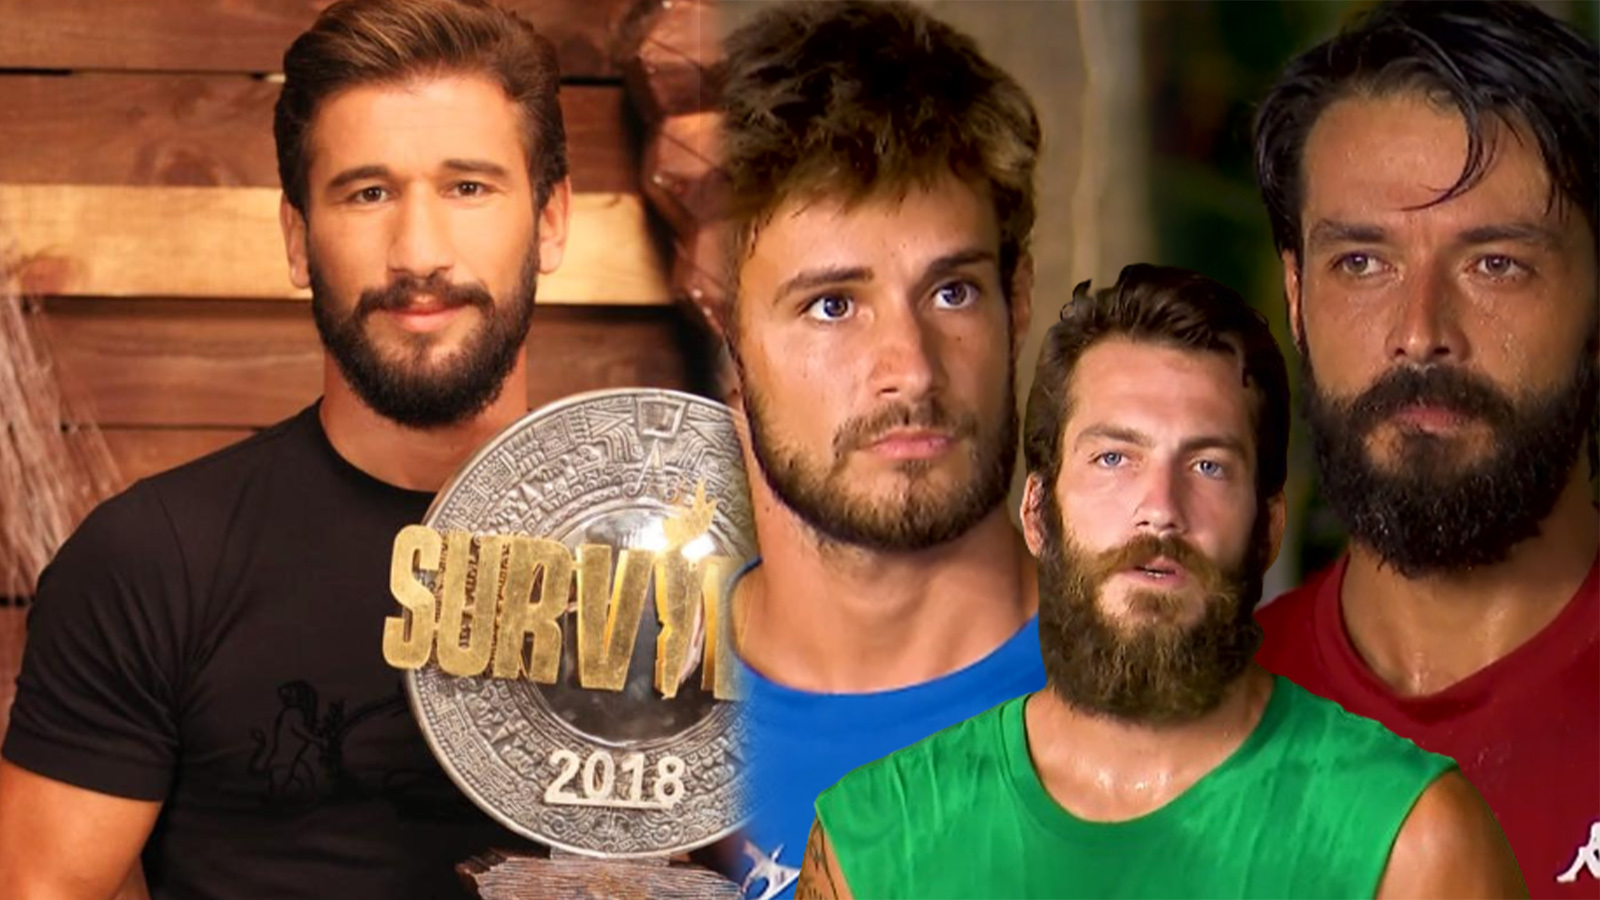 Eski Survivor şampiyonu Adem Kılıçcı'dan erkek yarışmacılara olay çıkaracak sözler!